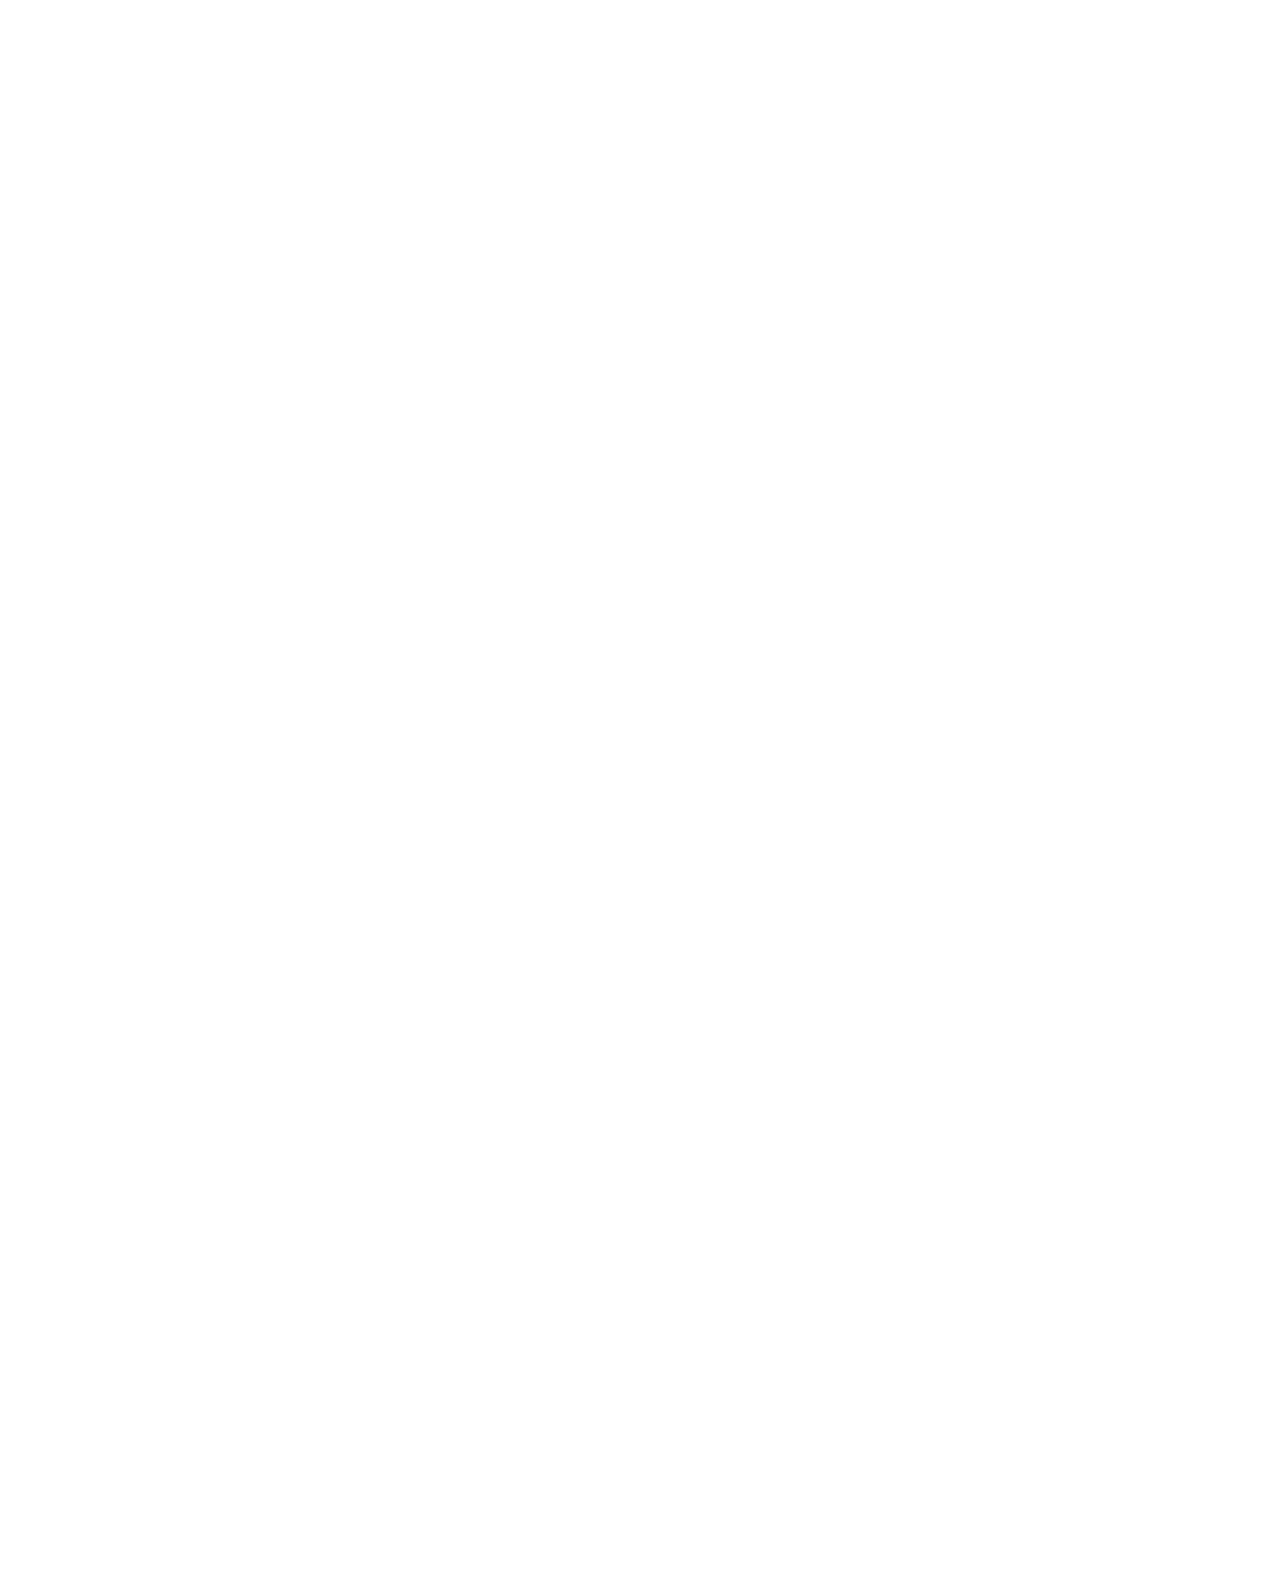 Healthcare Services Group logo pour fonds sombres (PNG transparent)